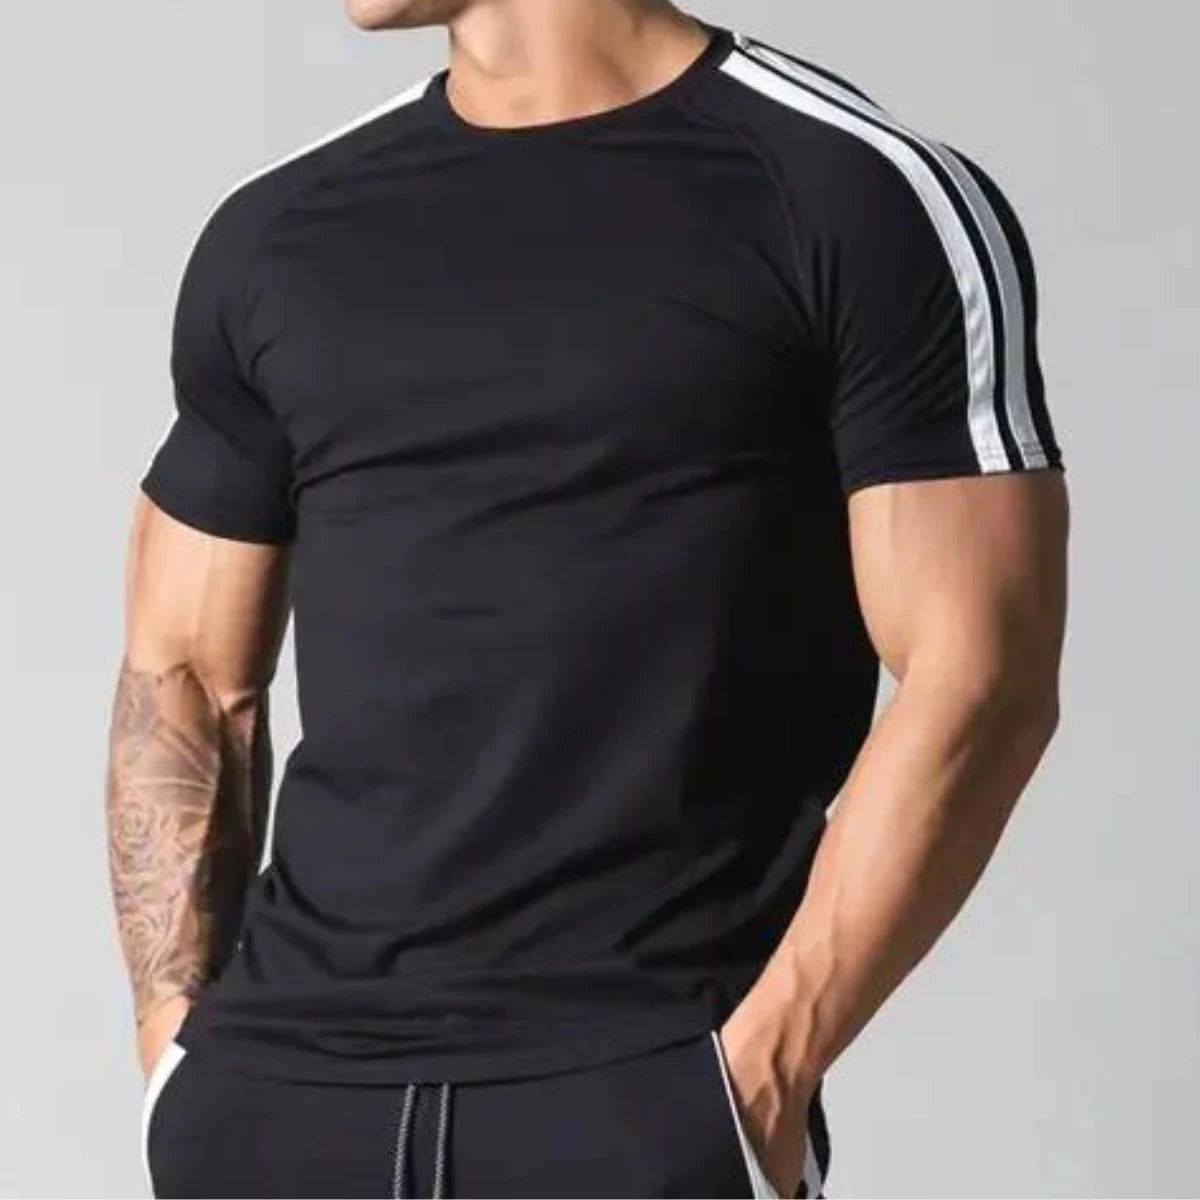 Black Men's Bodybuilding Cotton T-shirt